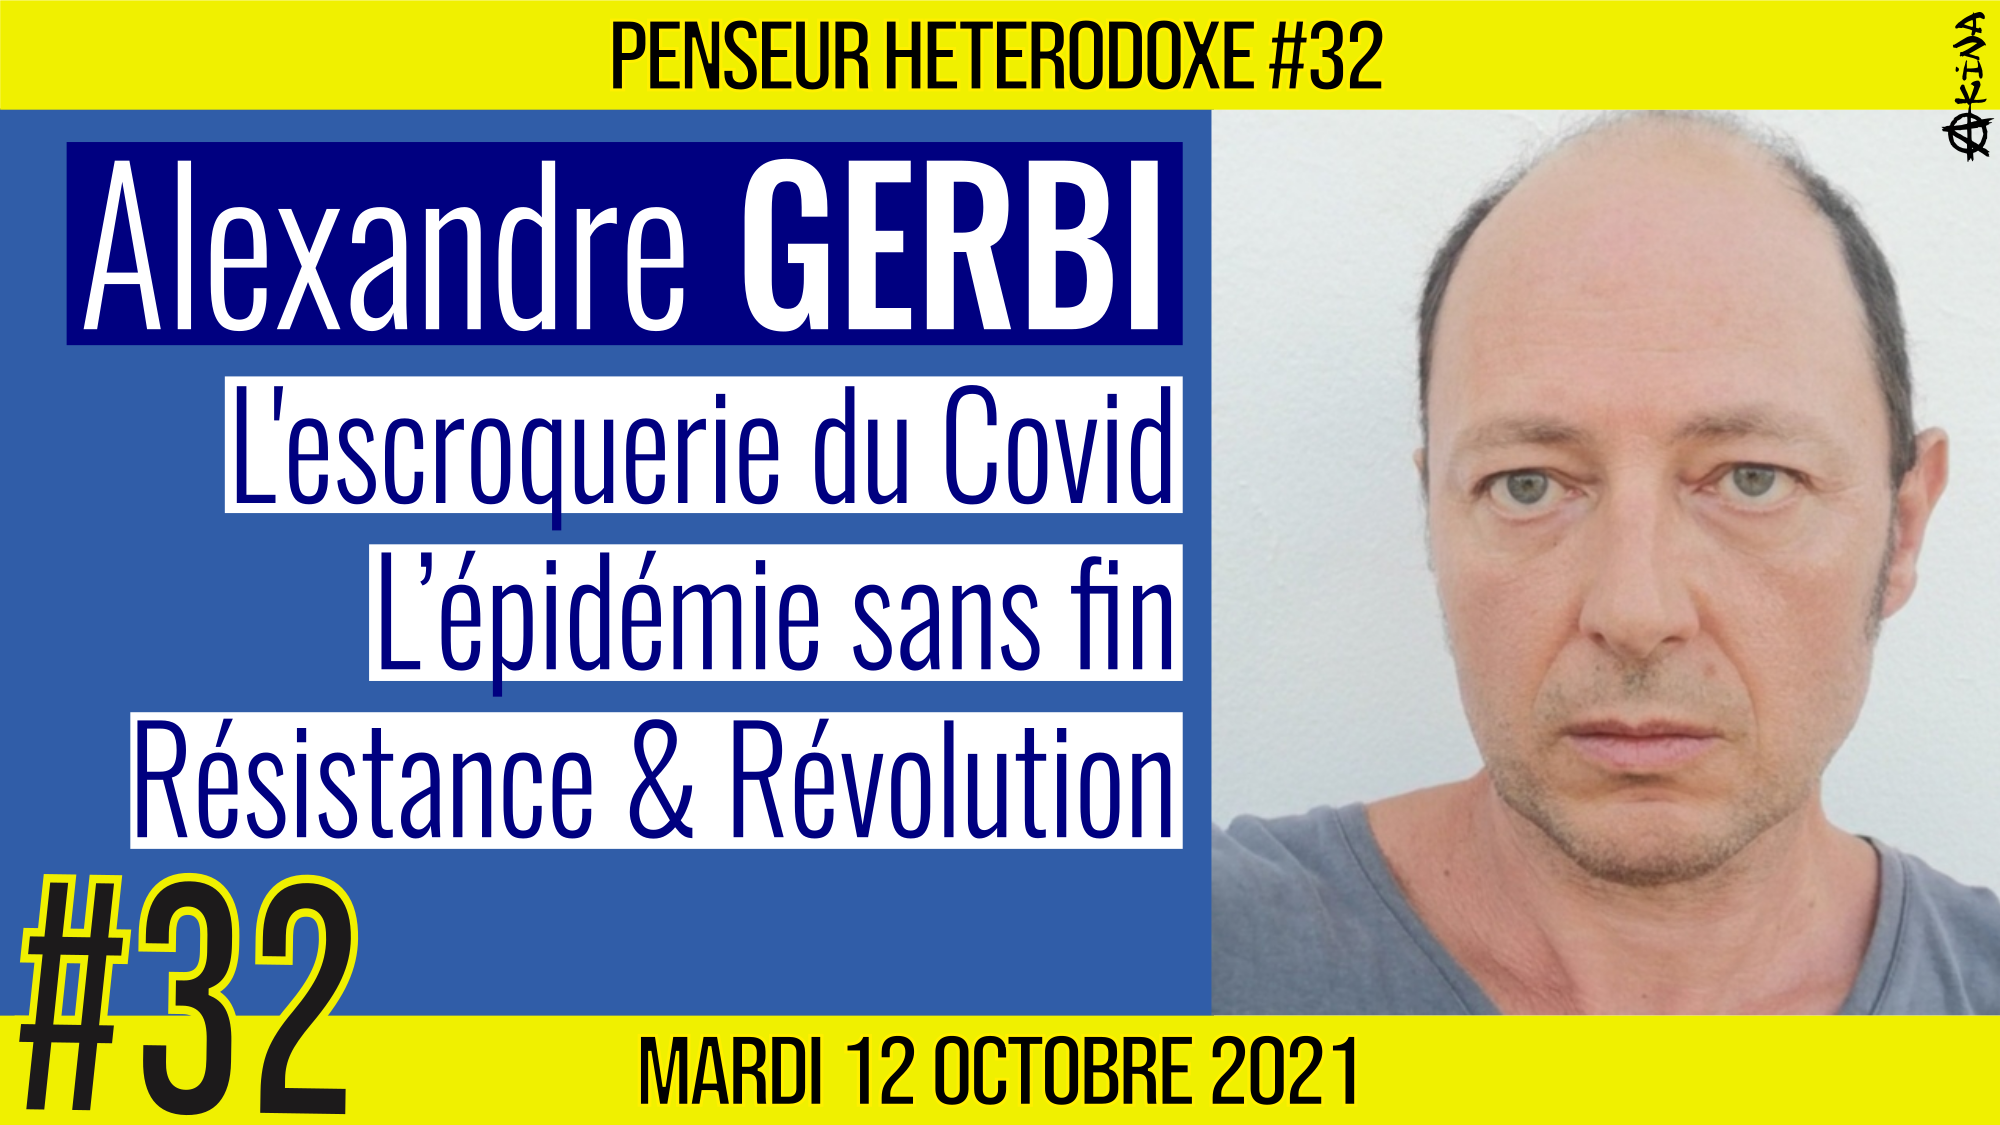 💡 PENSEUR HÉTÉRODOXE #32 🗣 Alexandre GERBI 🎯 L’escroquerie du COVID, Résistance & Révolution 📆 12-10-2021